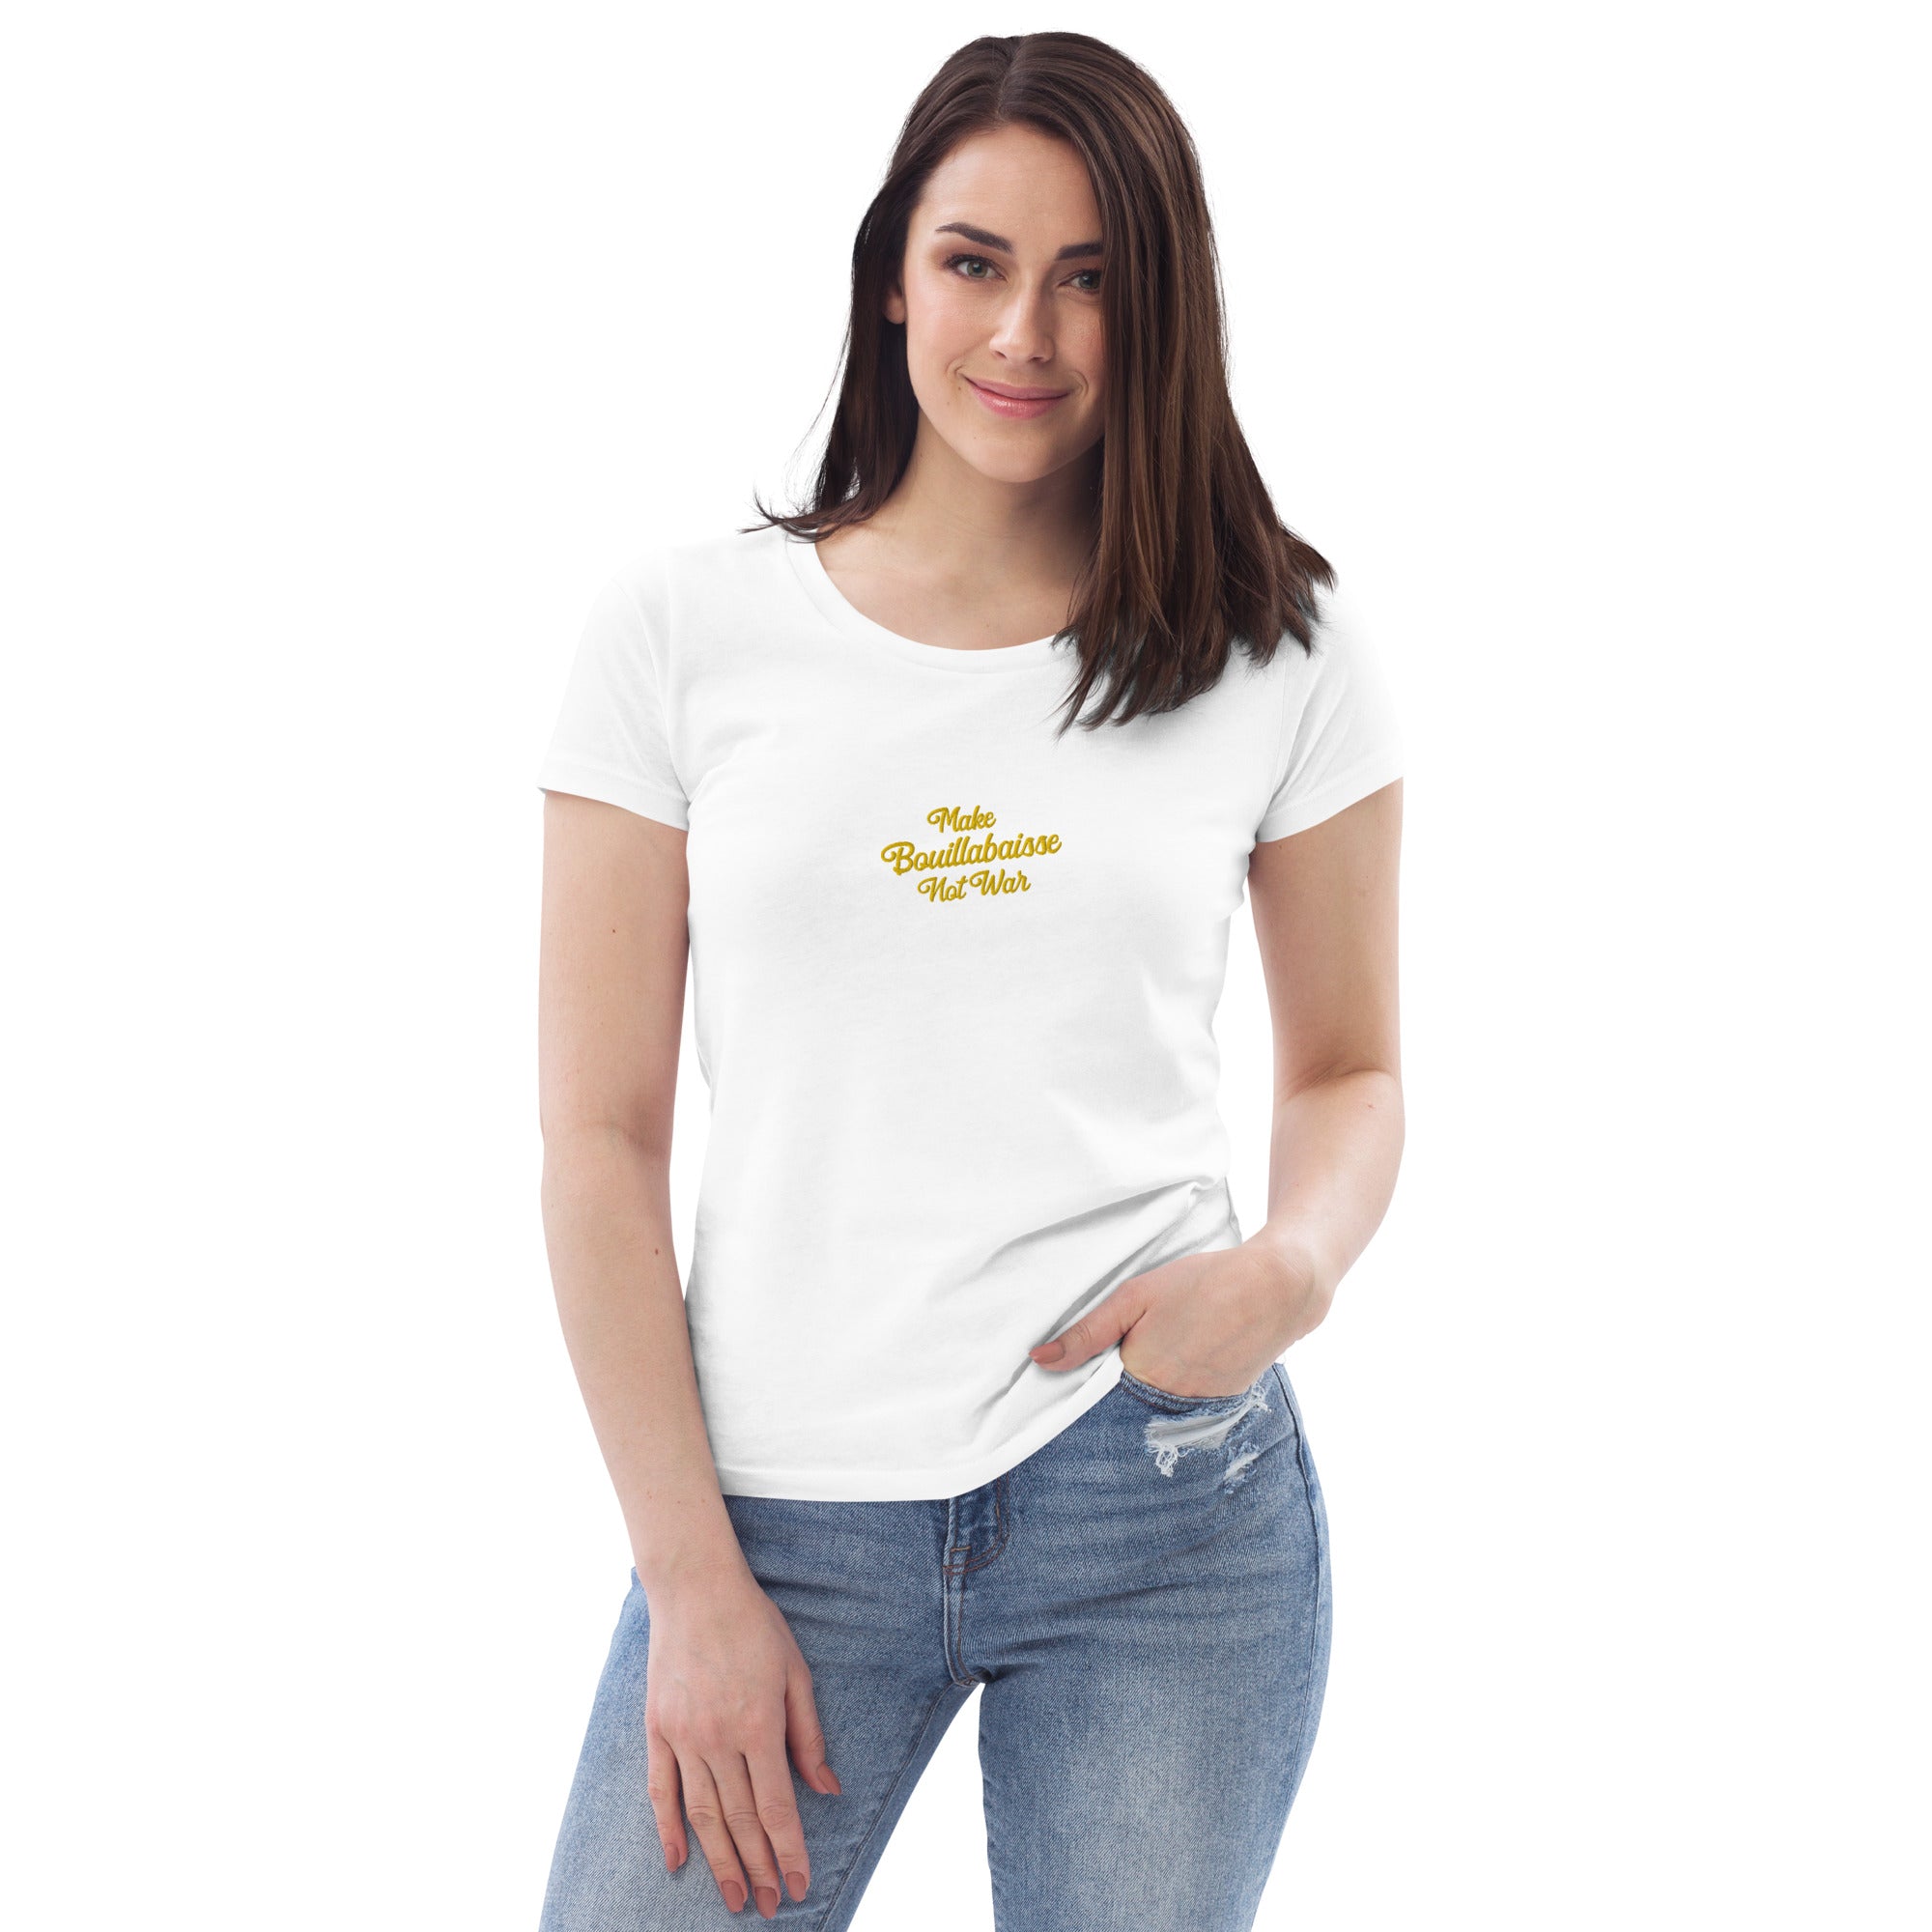 T-shirt moulant écologique femme Make Bouillabaisse Not War brodé